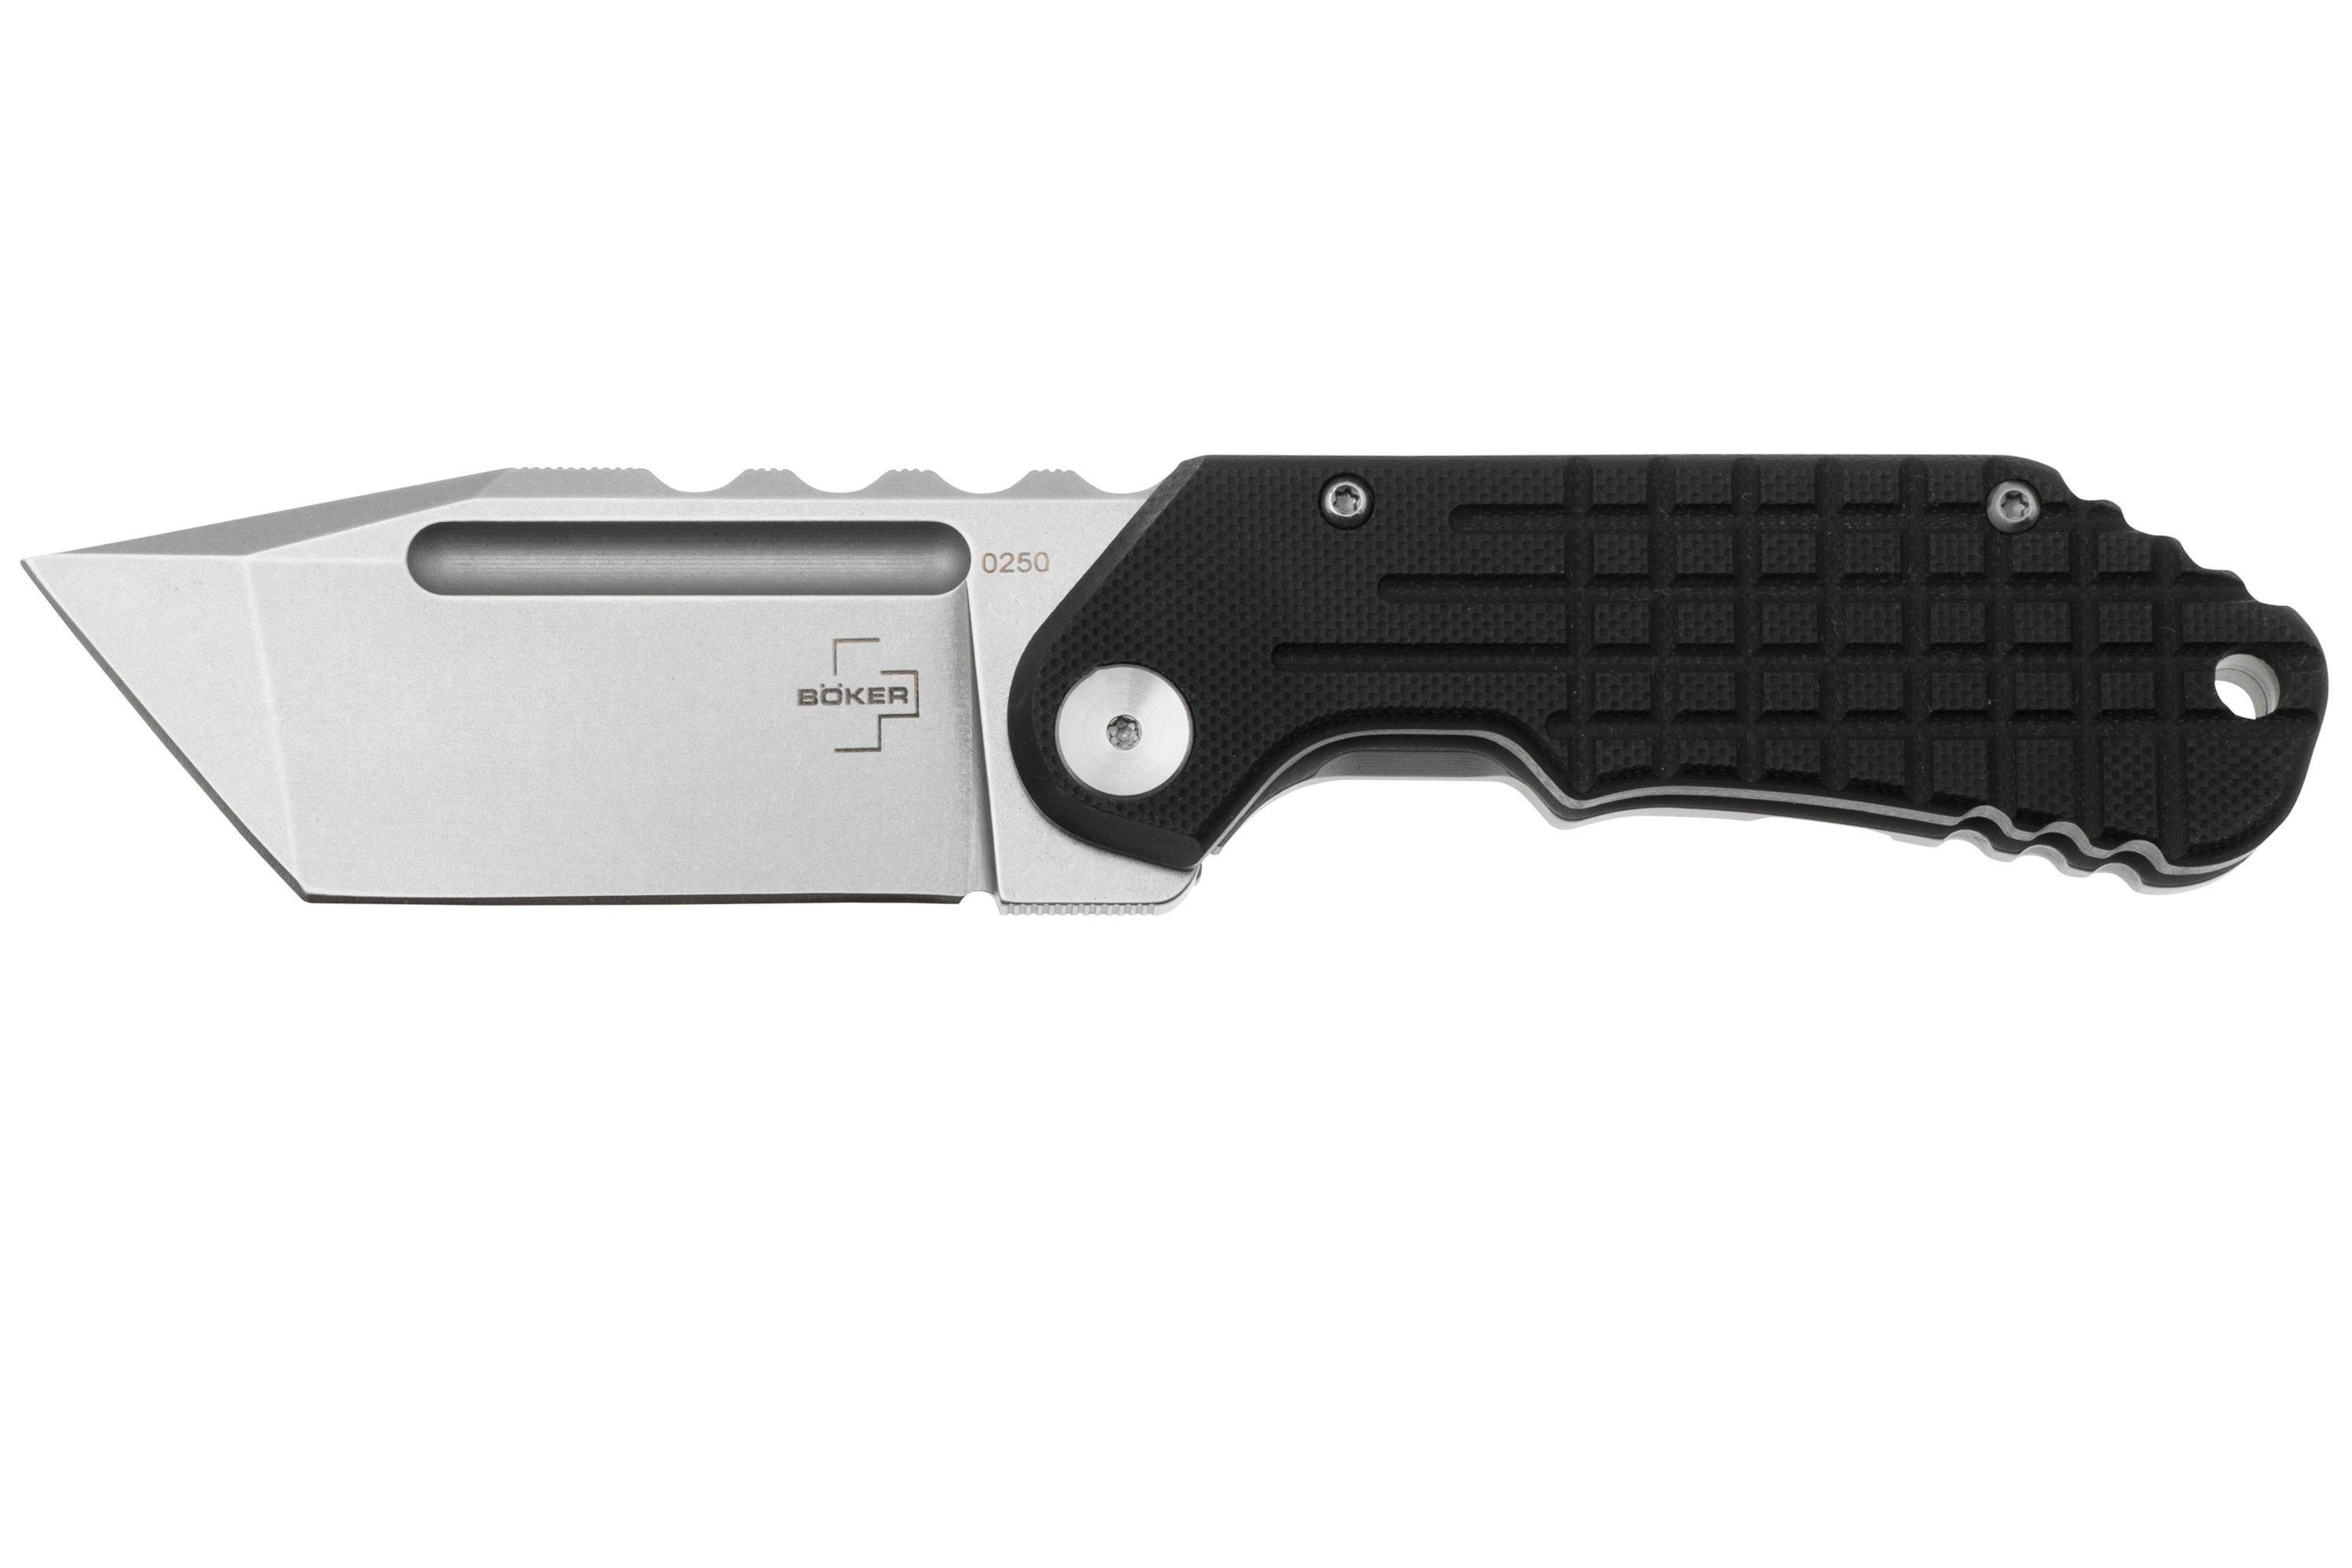 Boker Plus - Dvalin Folder Drop Knife - D2 - G10 Black - 01BO548 - knife